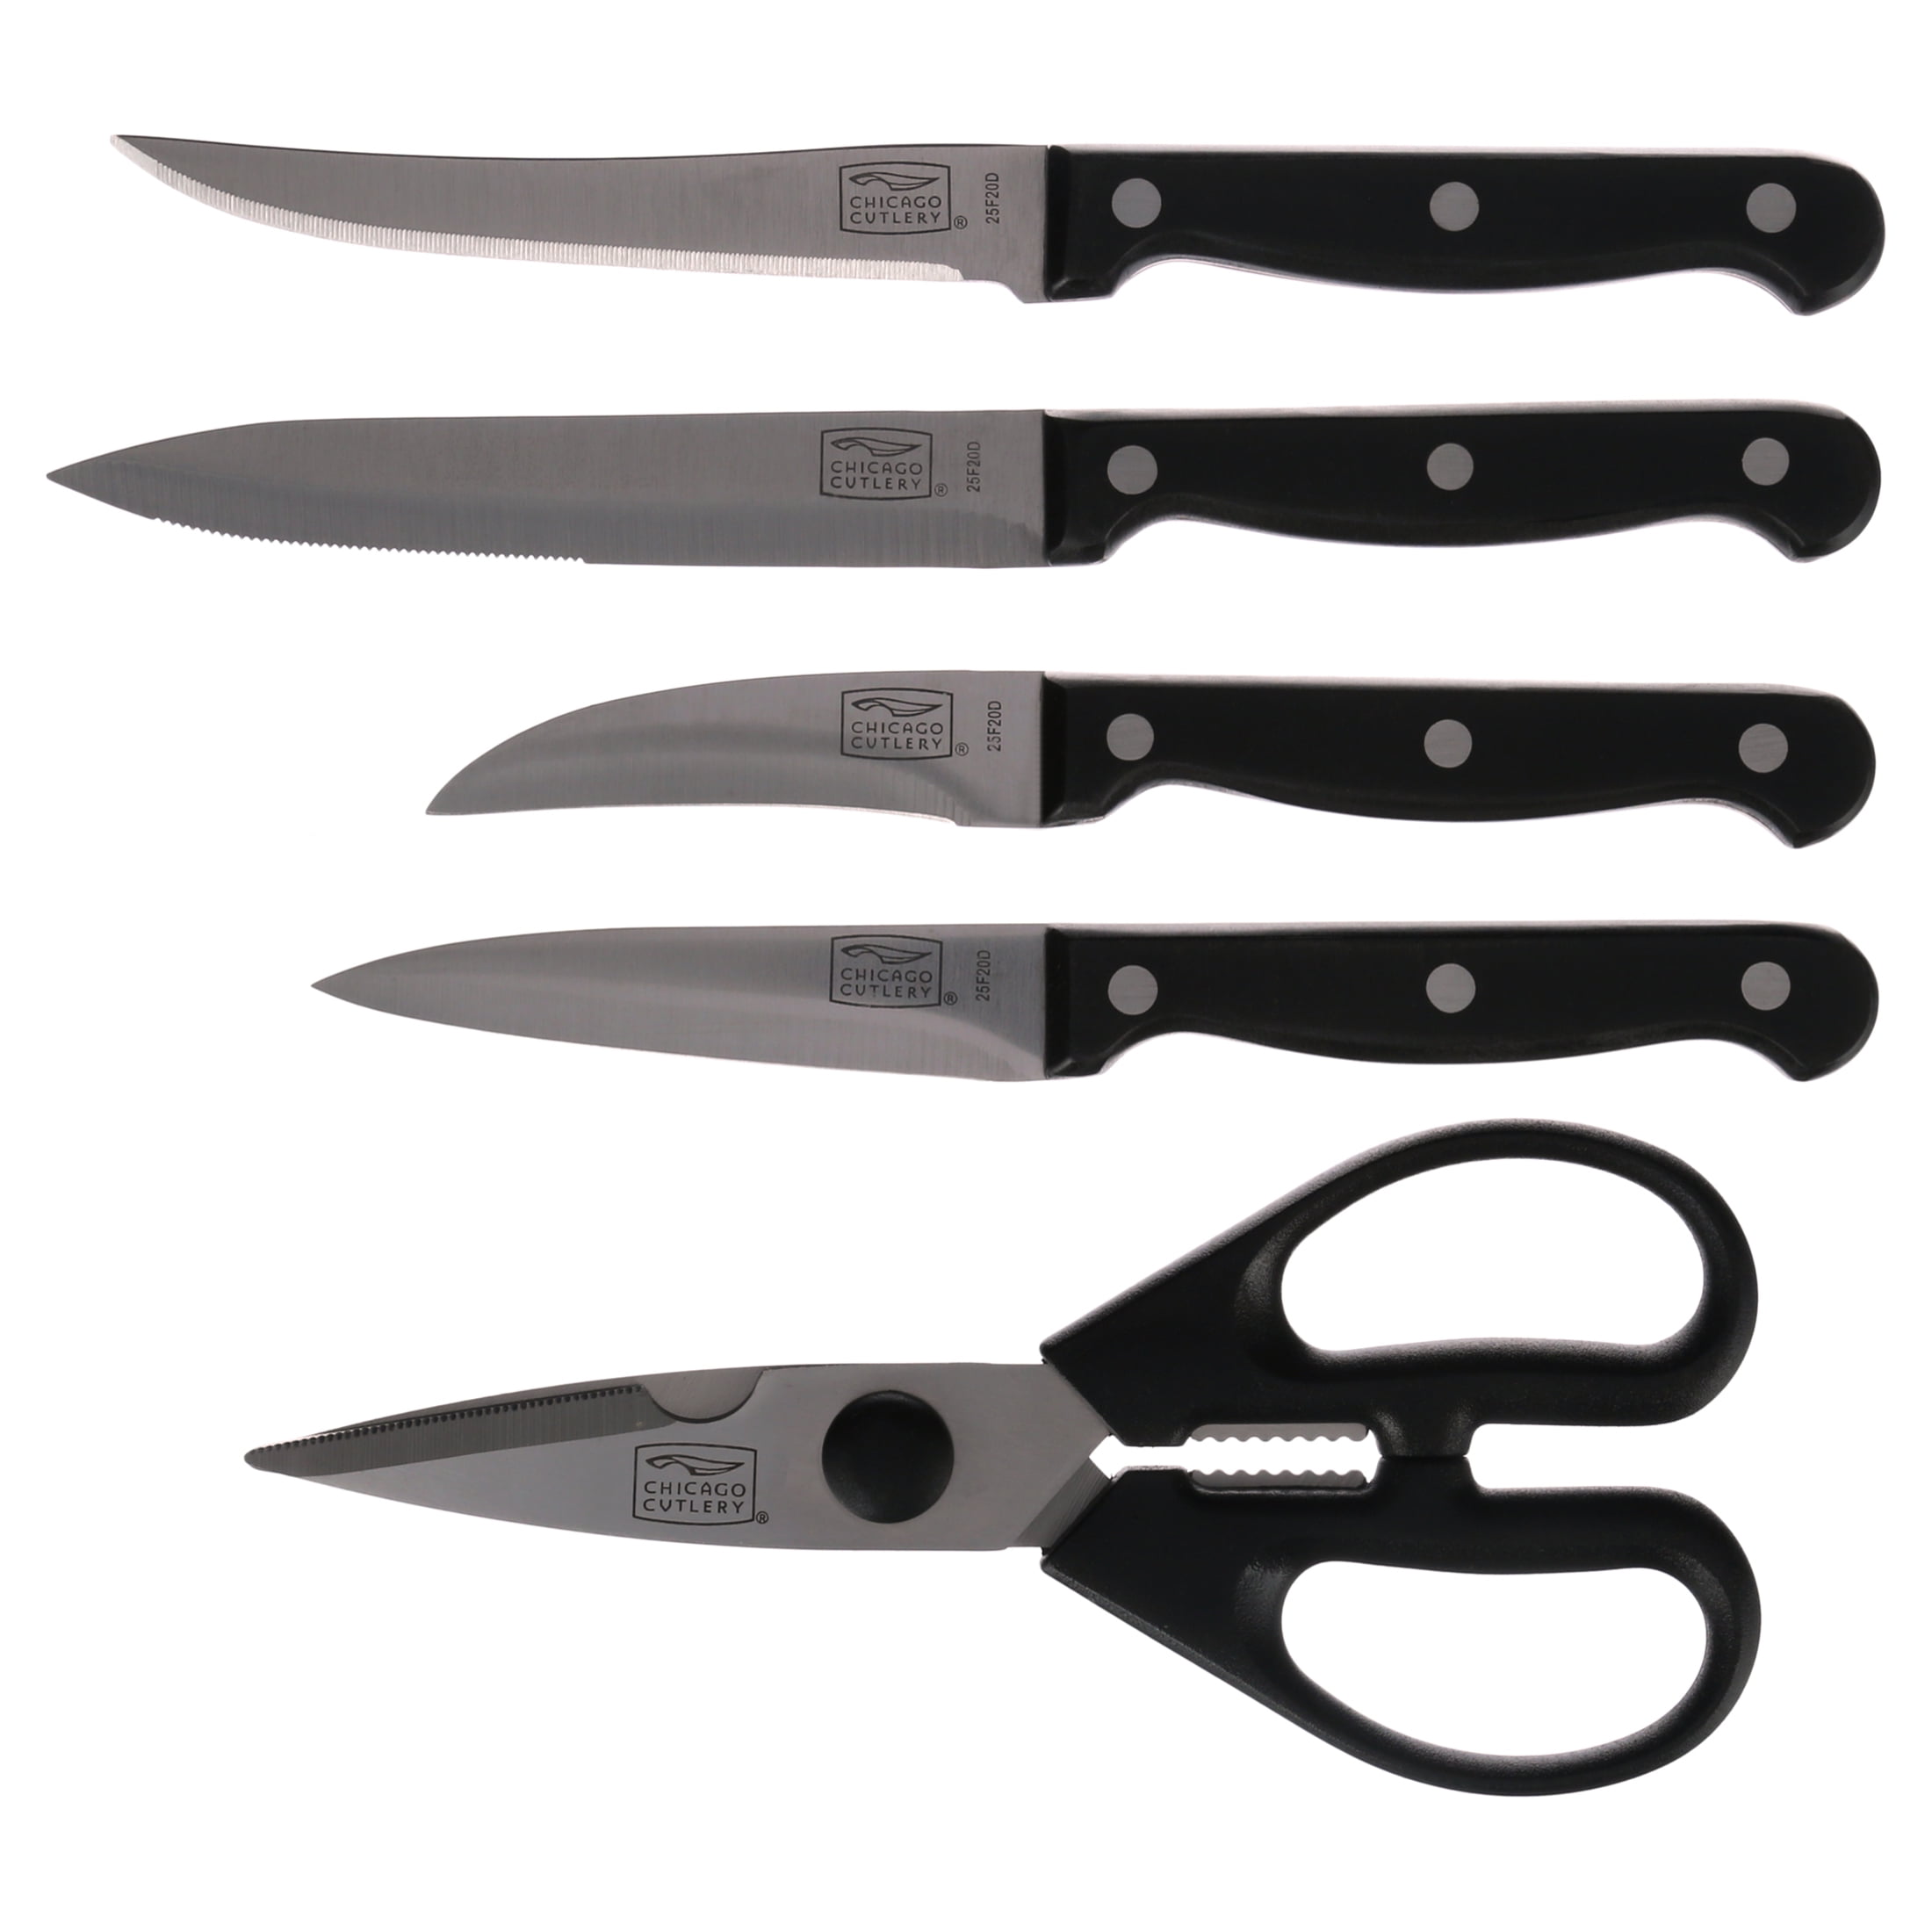 Chicago Cutlery Essentials 15 Piece Knife Set